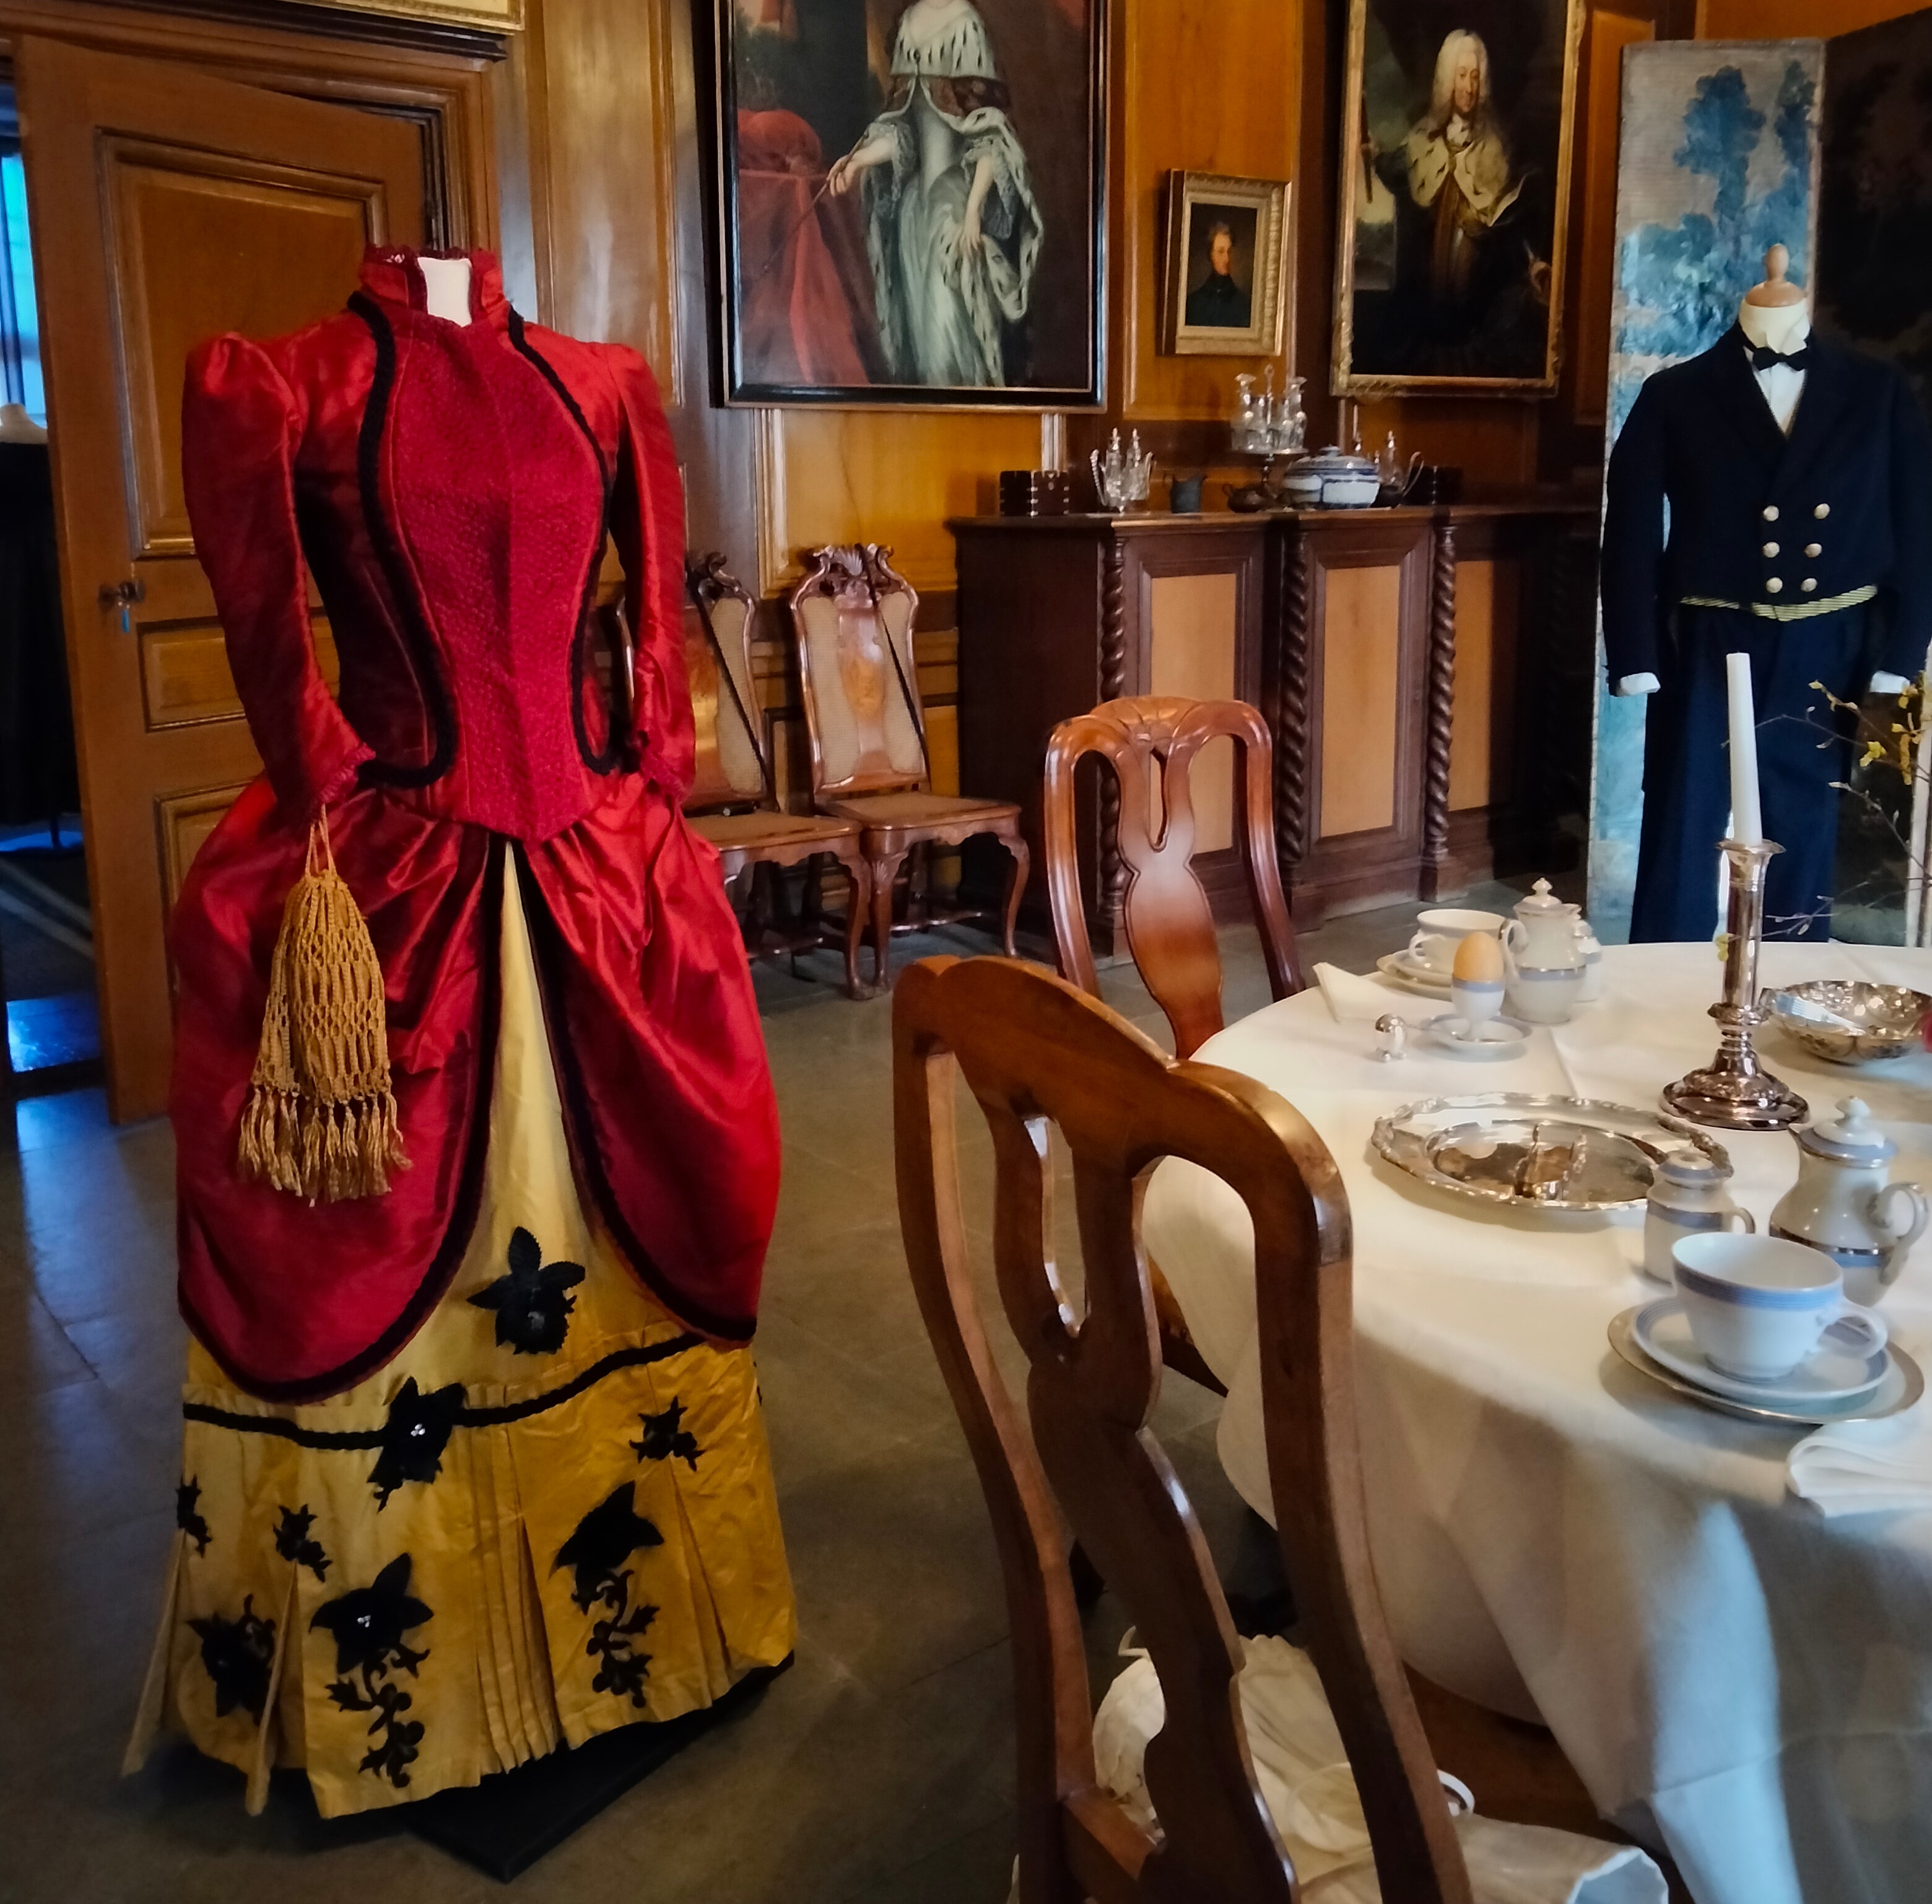 Röd klänning, ca 1880-tal, är skänkt och sydd av Tove Bjerg. I bakgrunden fröken Emilie Pipers betjänt Vilhelm Erikssons arbetskläder i original, från sekelskiftet 18-1900